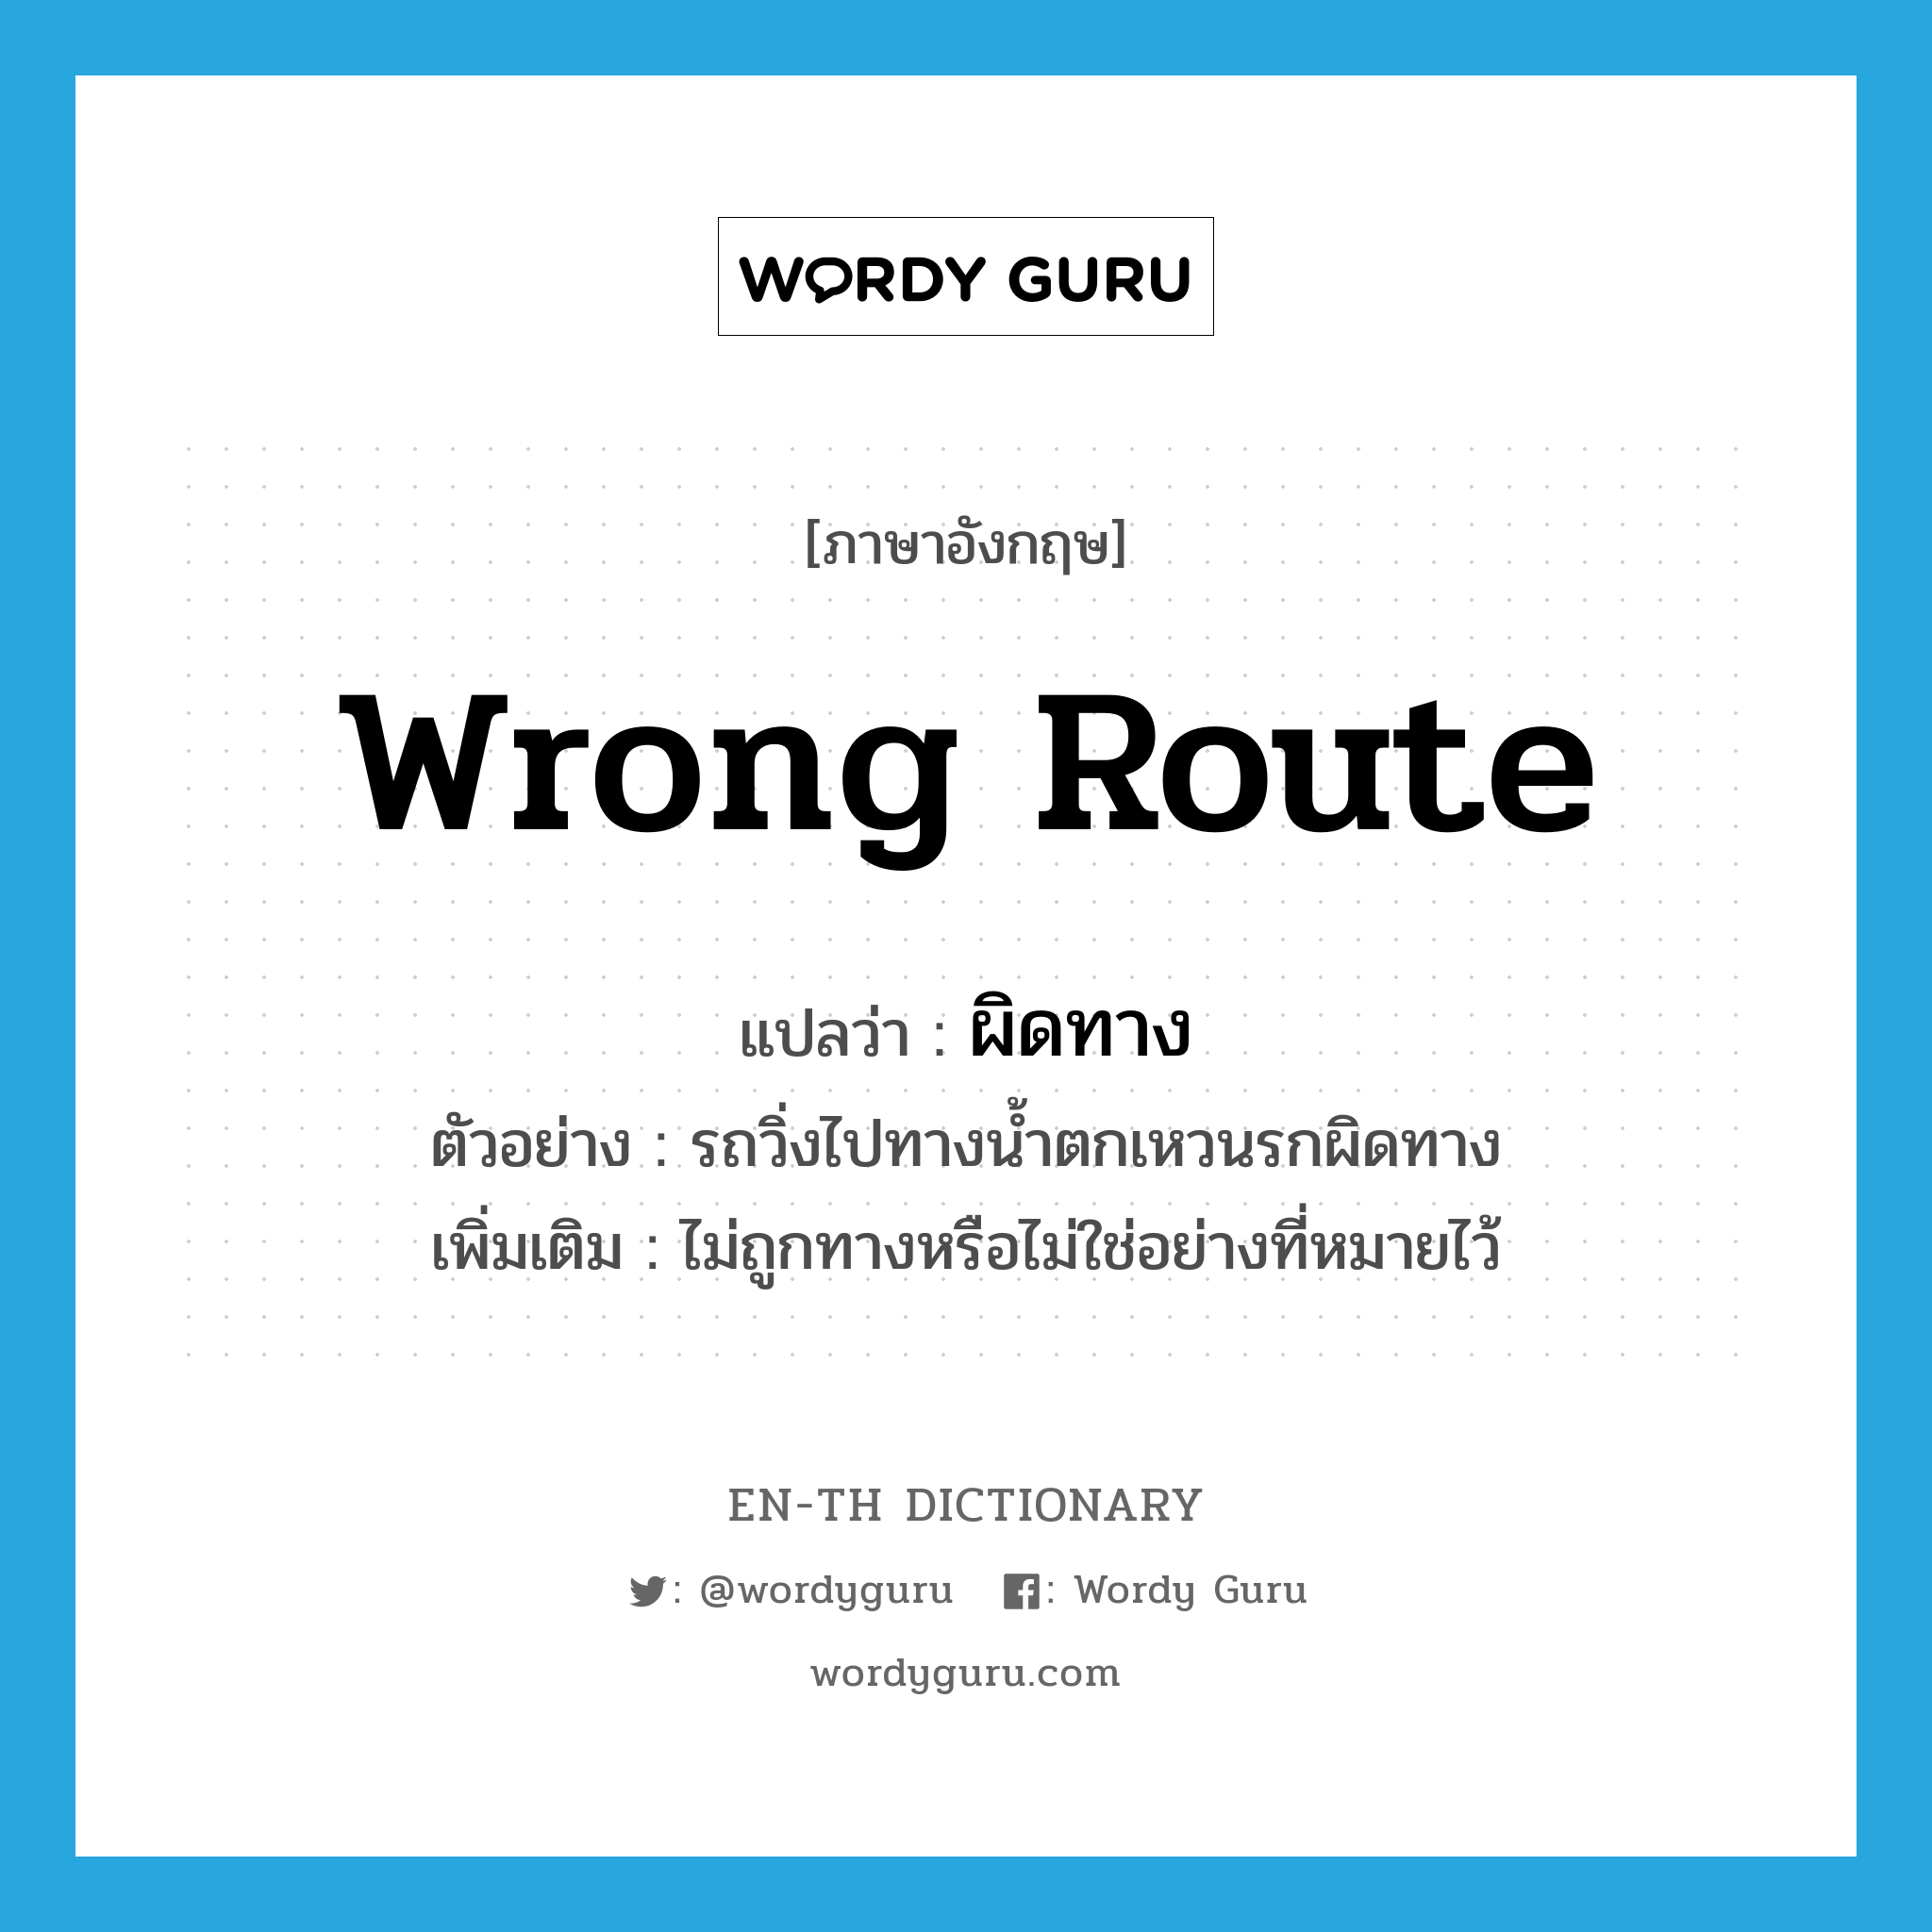 wrong route แปลว่า?, คำศัพท์ภาษาอังกฤษ wrong route แปลว่า ผิดทาง ประเภท ADV ตัวอย่าง รถวิ่งไปทางน้ำตกเหวนรกผิดทาง เพิ่มเติม ไม่ถูกทางหรือไม่ใช่อย่างที่หมายไว้ หมวด ADV